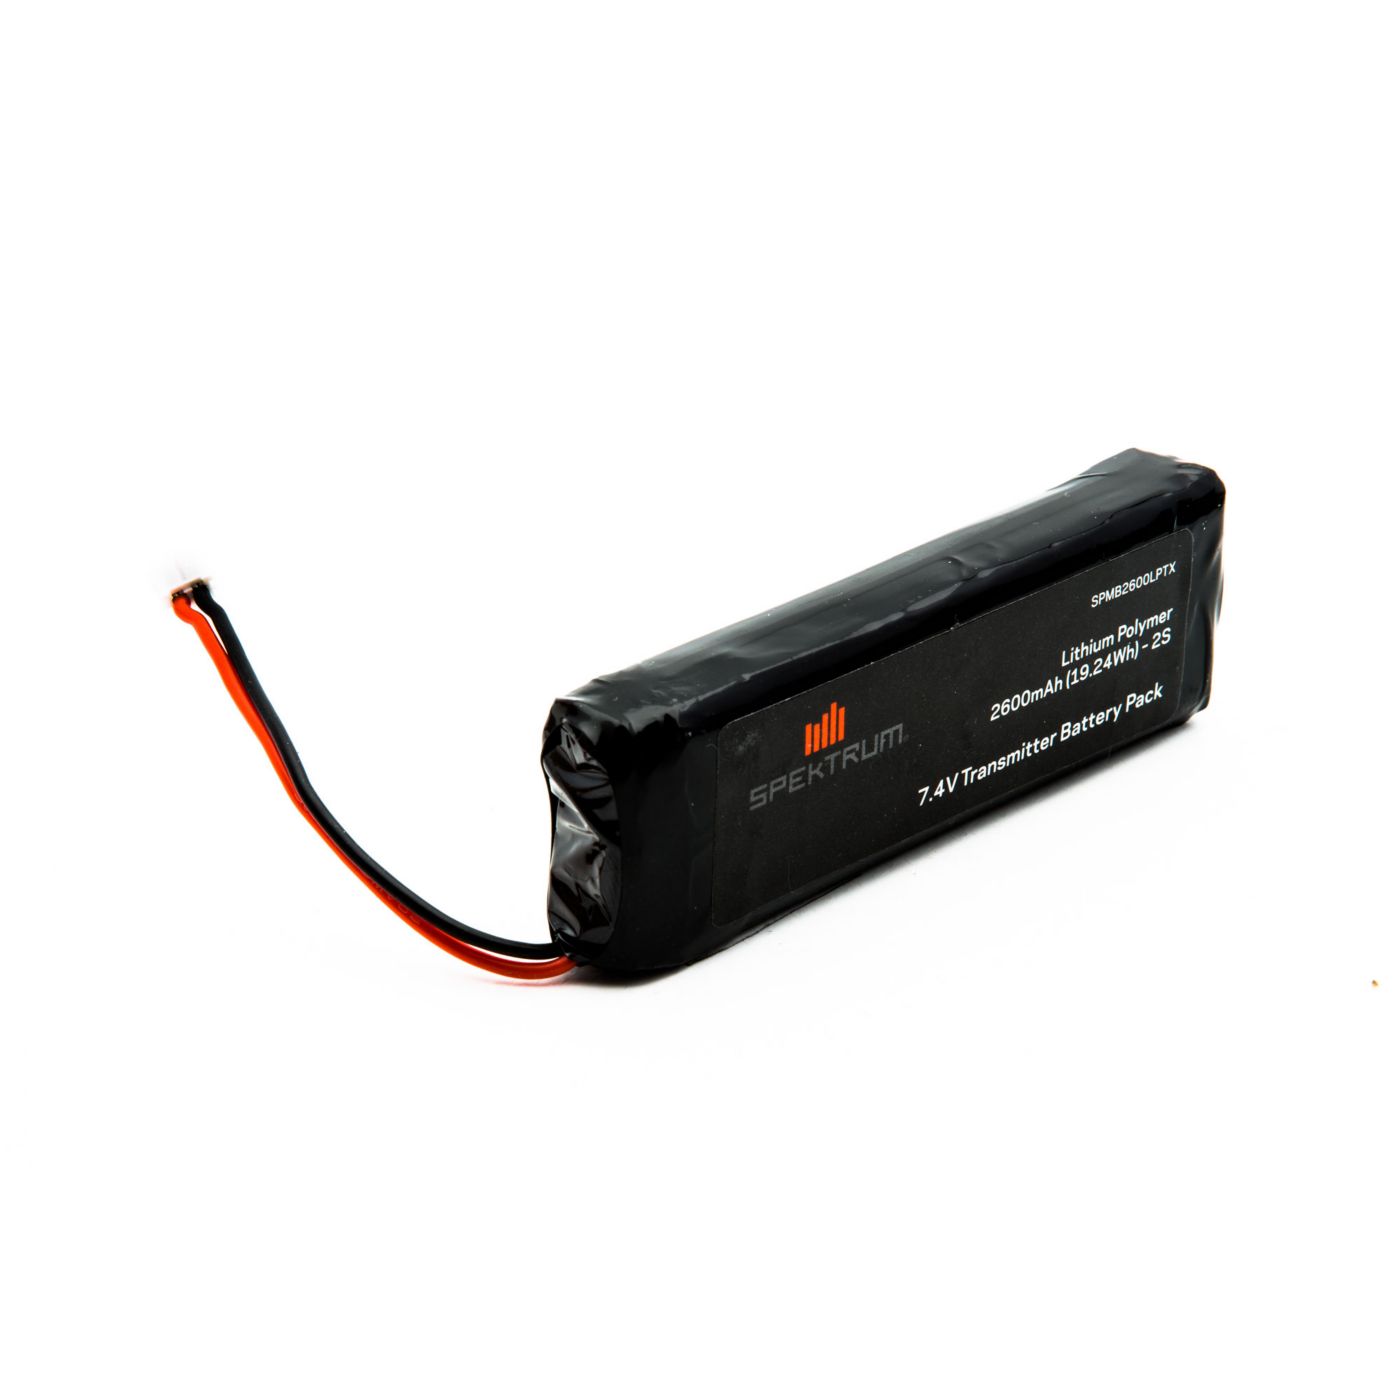 Spektrum 2600mAh LiPo Transmitter Battery: DX18 (SPM2600LPTX)